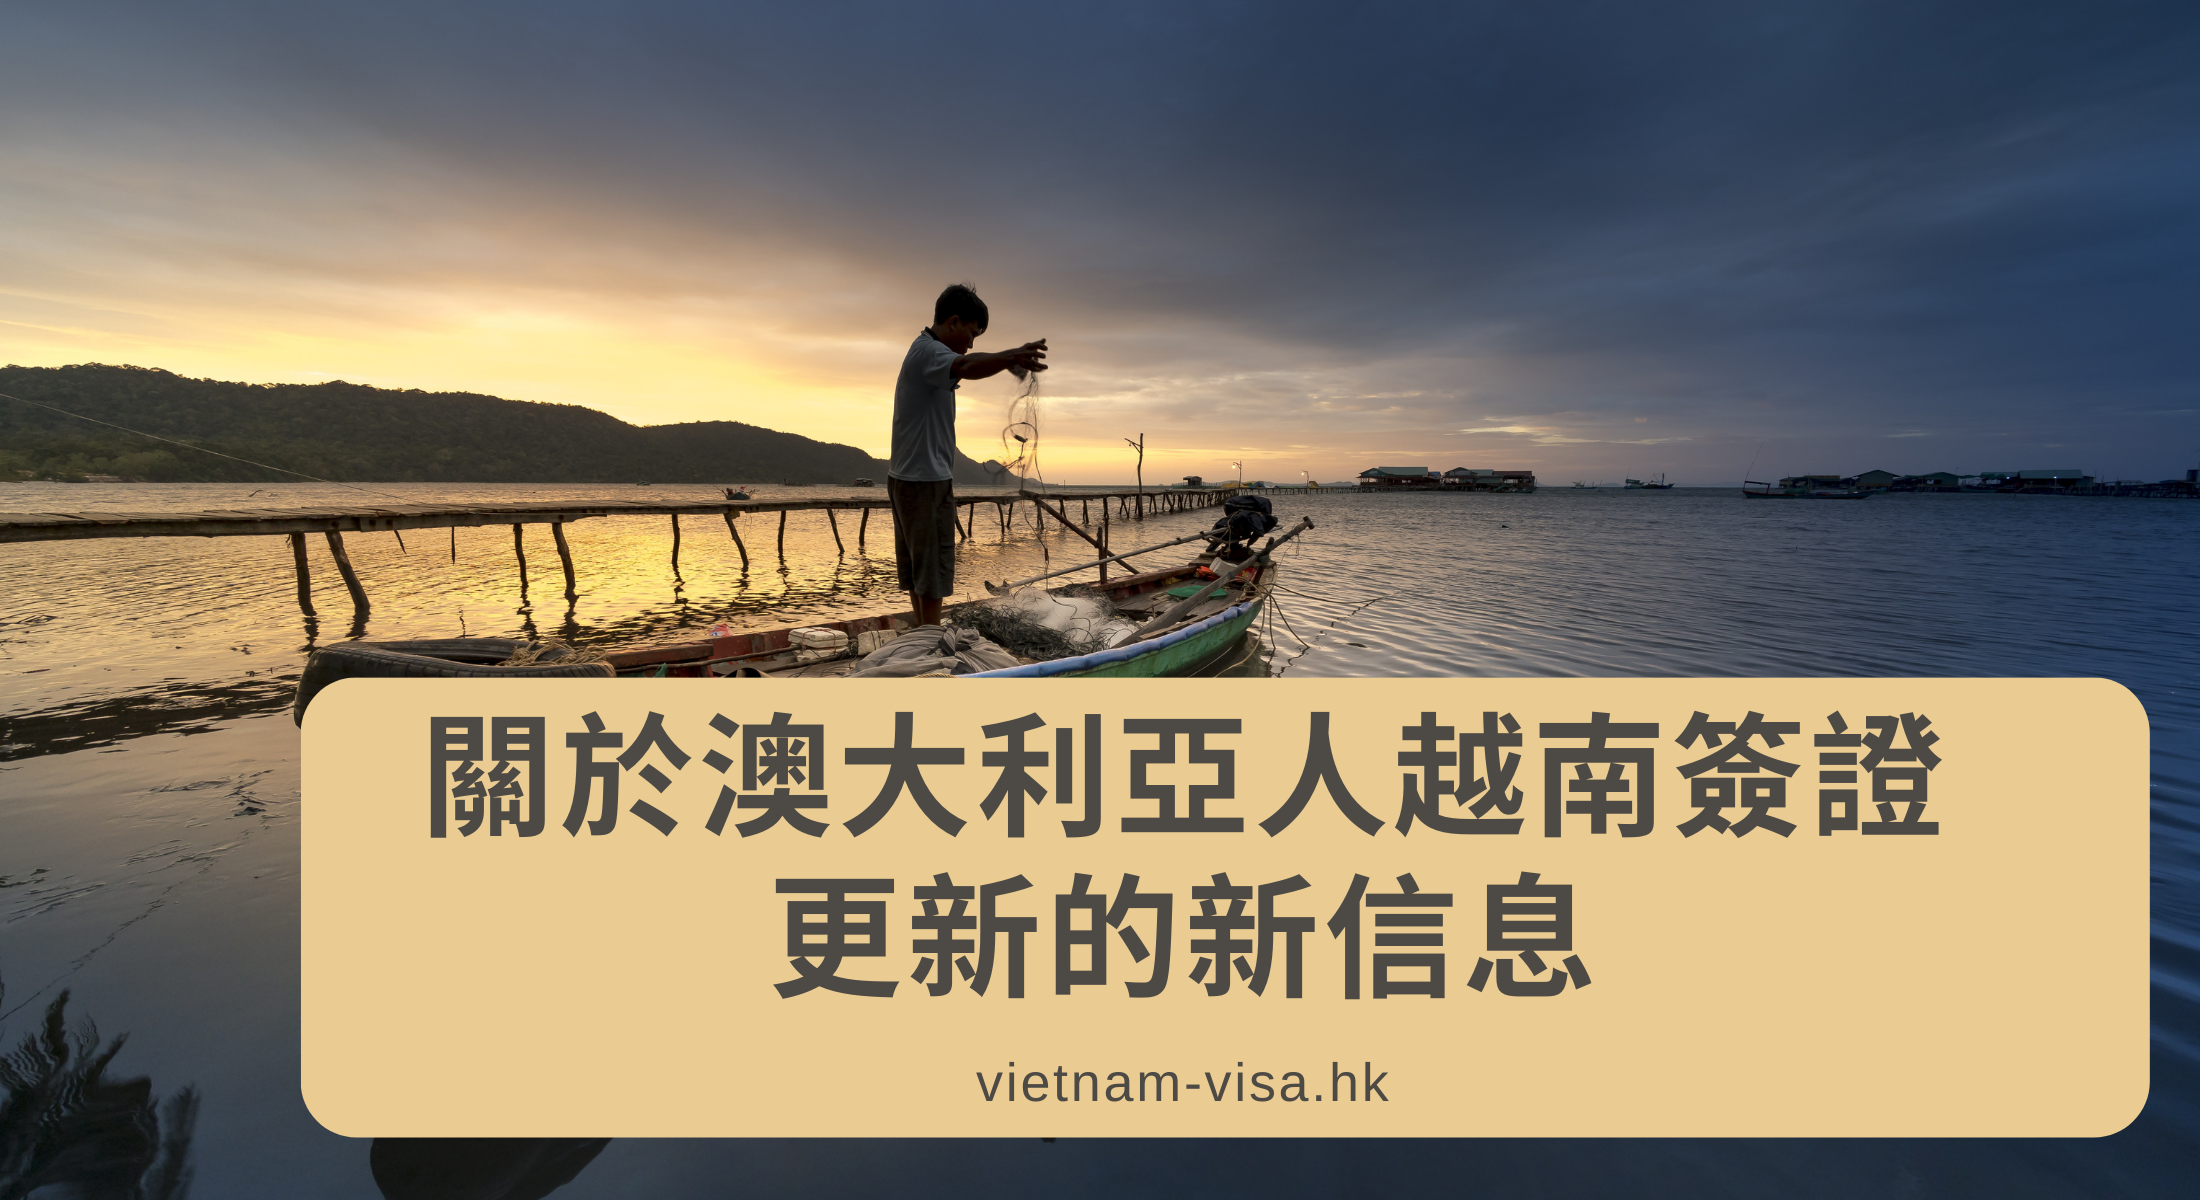 關於澳大利亞人越南簽證更新的新信息